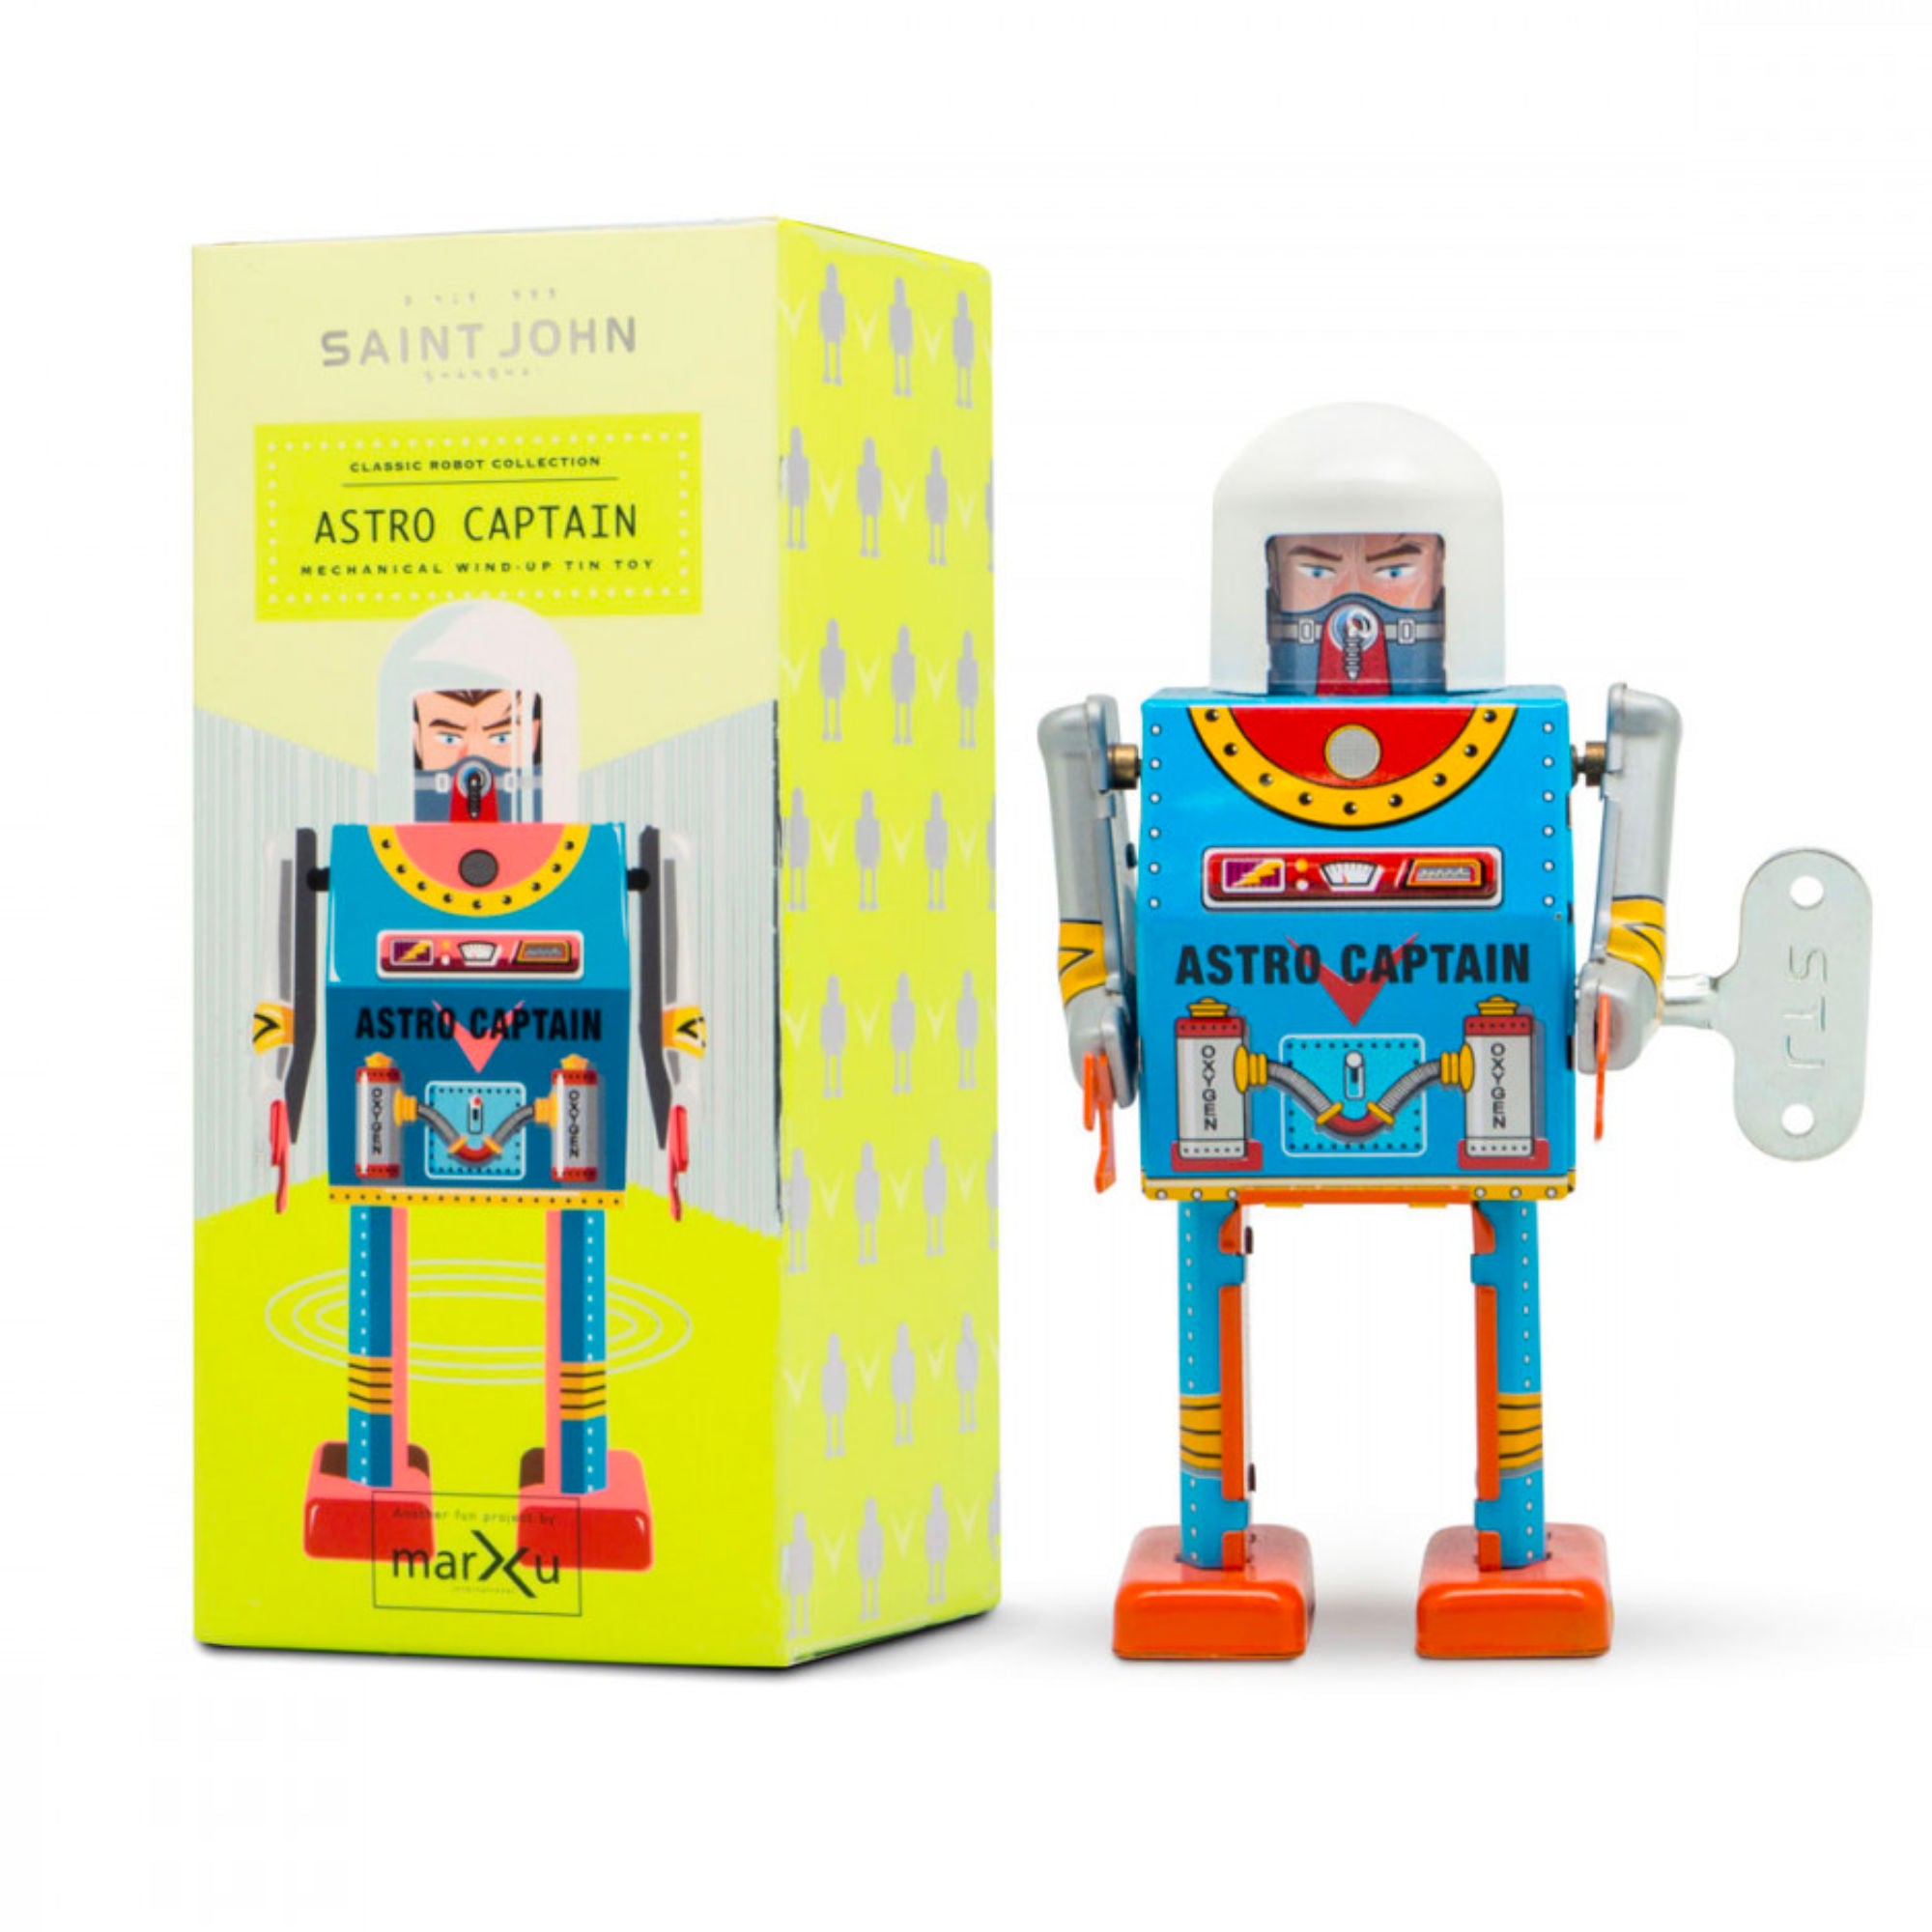 Saint John Astro Captain Robot Windup Toy